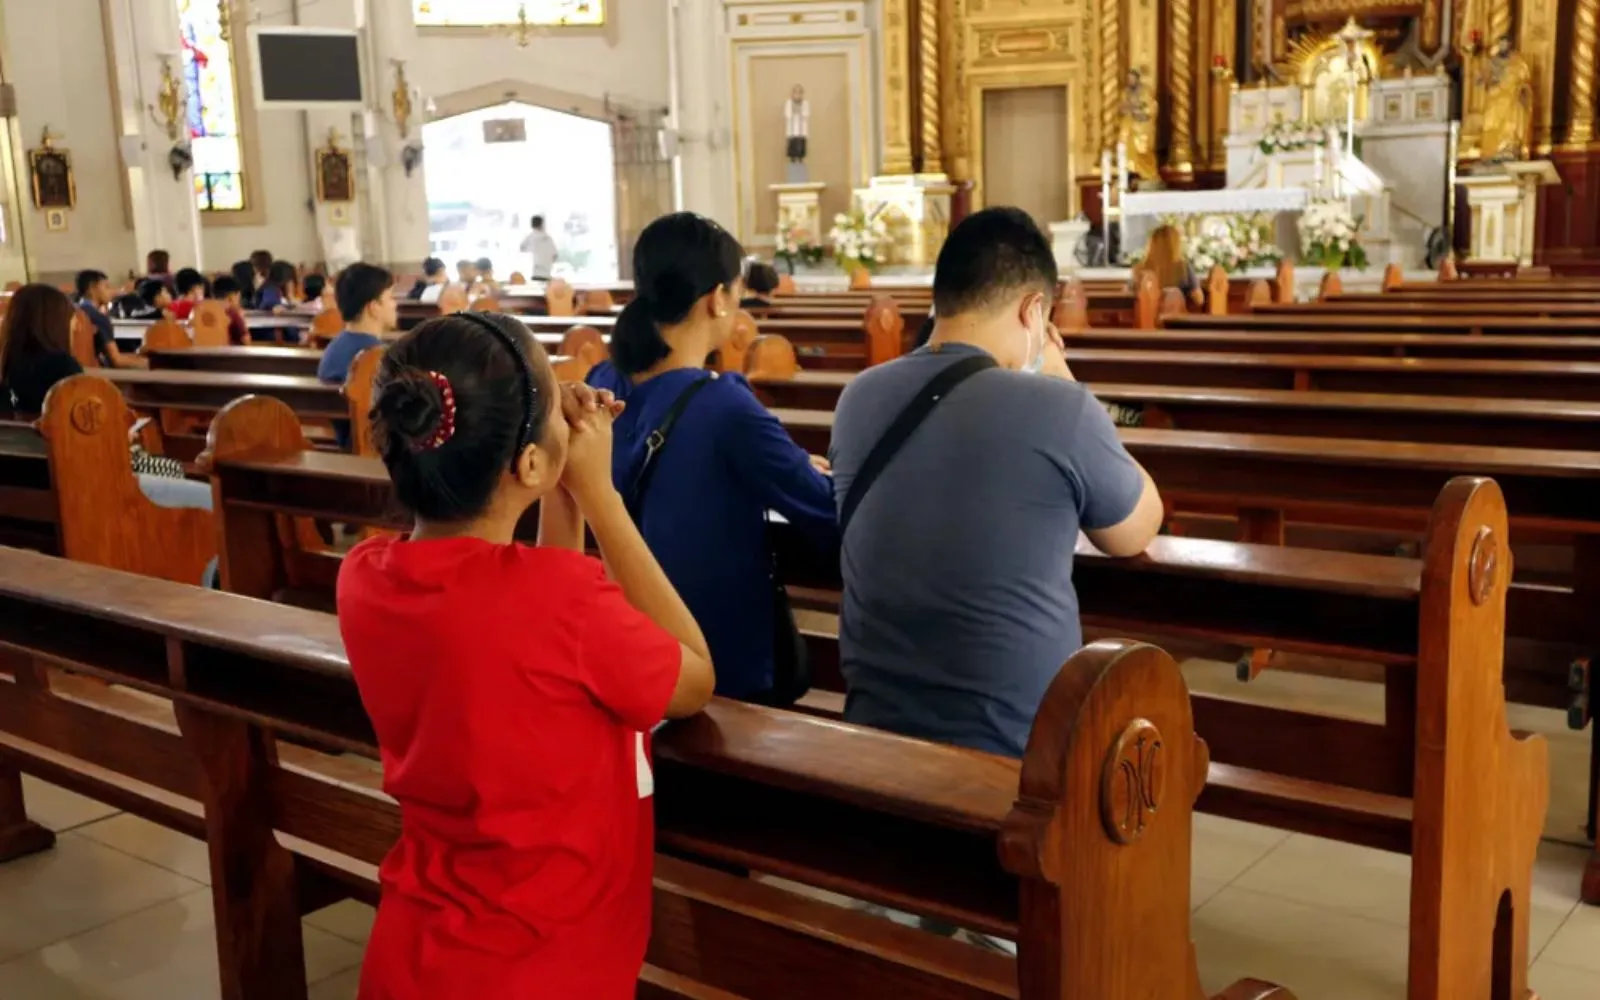 Hombres y mujeres católicos se arrodillan y rezan dentro de la Catedral de Antipolo en Filipinas.?w=200&h=150